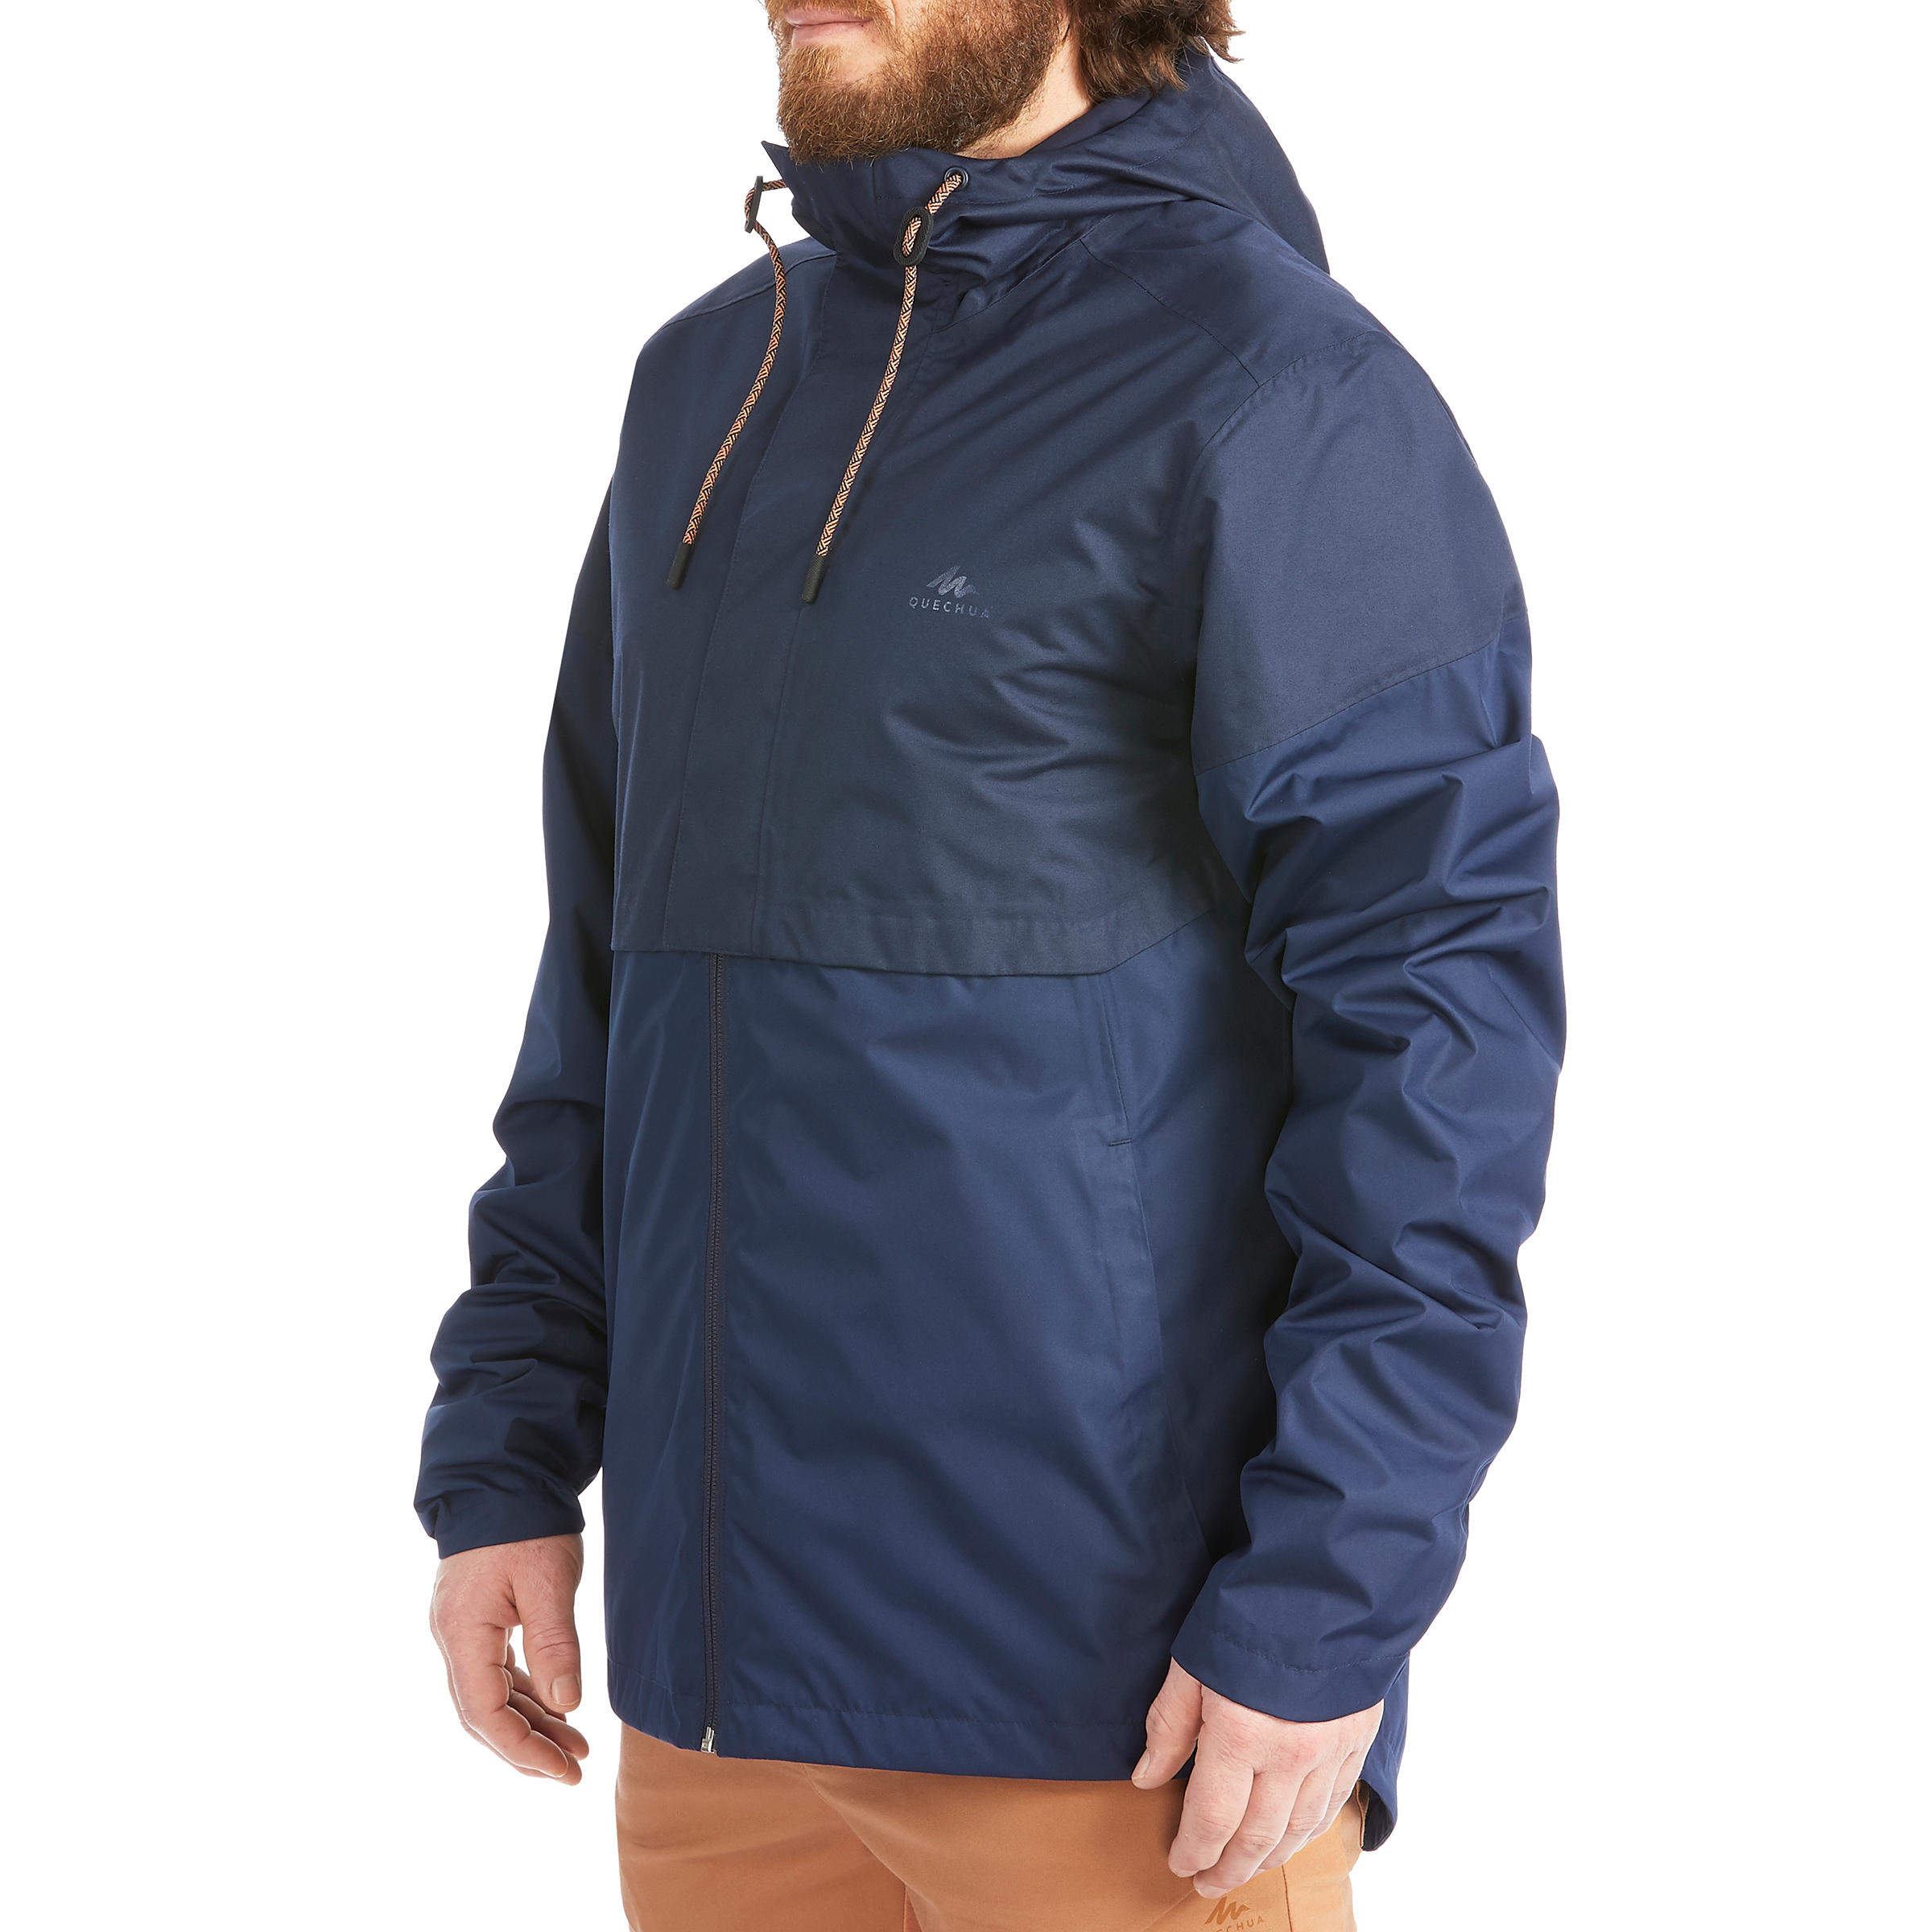 Men's waterpoof jacket - NH500 - Beige 5/18